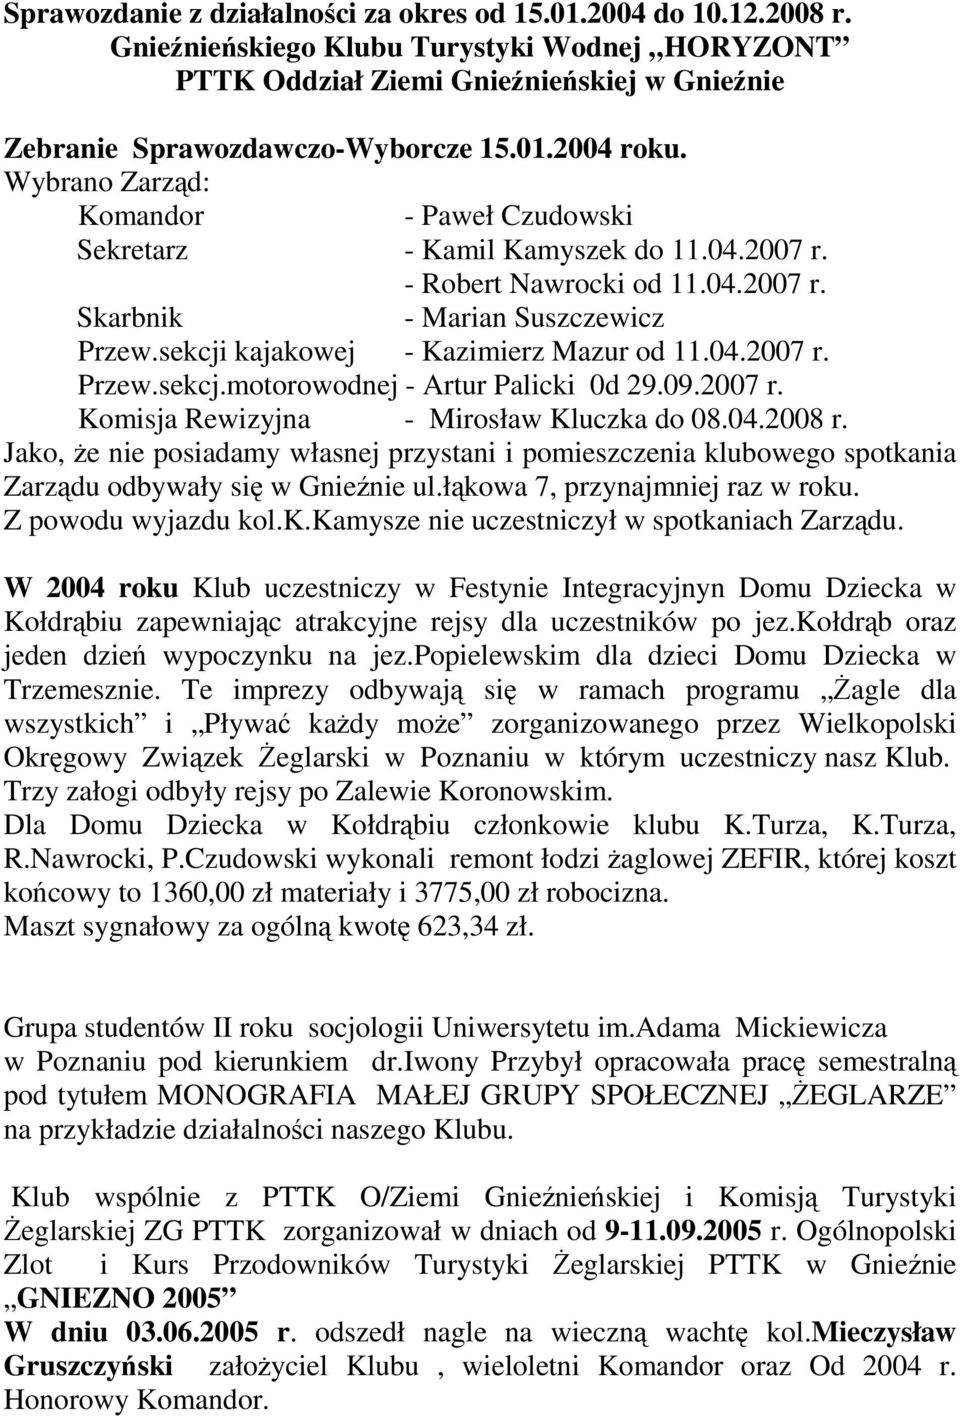 04.2007 r. Przew.sekcj.motorowodnej - Artur Palicki 0d 29.09.2007 r. Komisja Rewizyjna - Mirosław Kluczka do 08.04.2008 r.